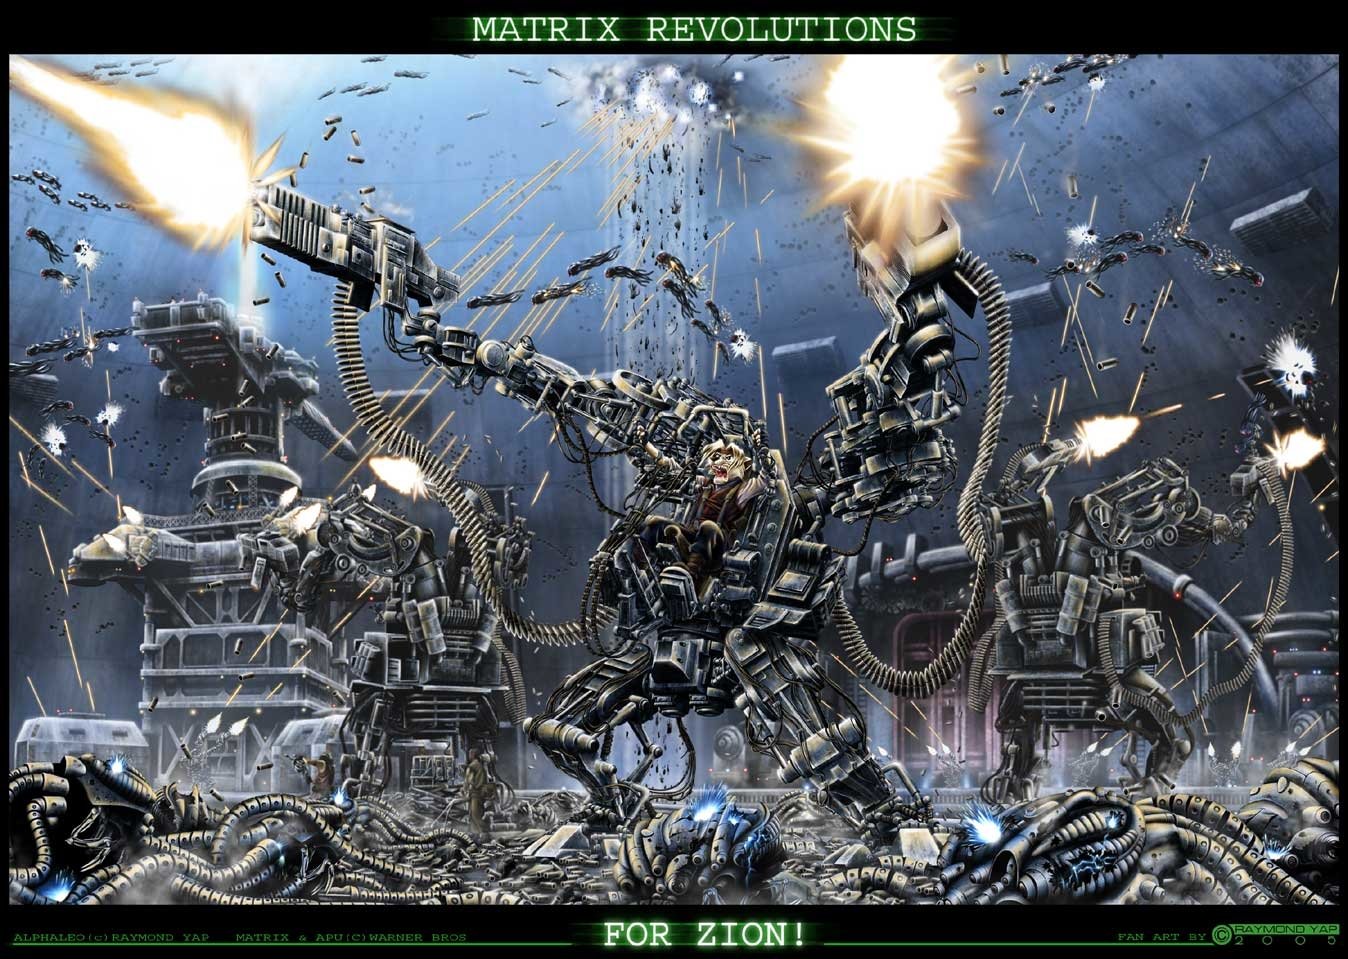 The Matrix Revolutions Wallpapers